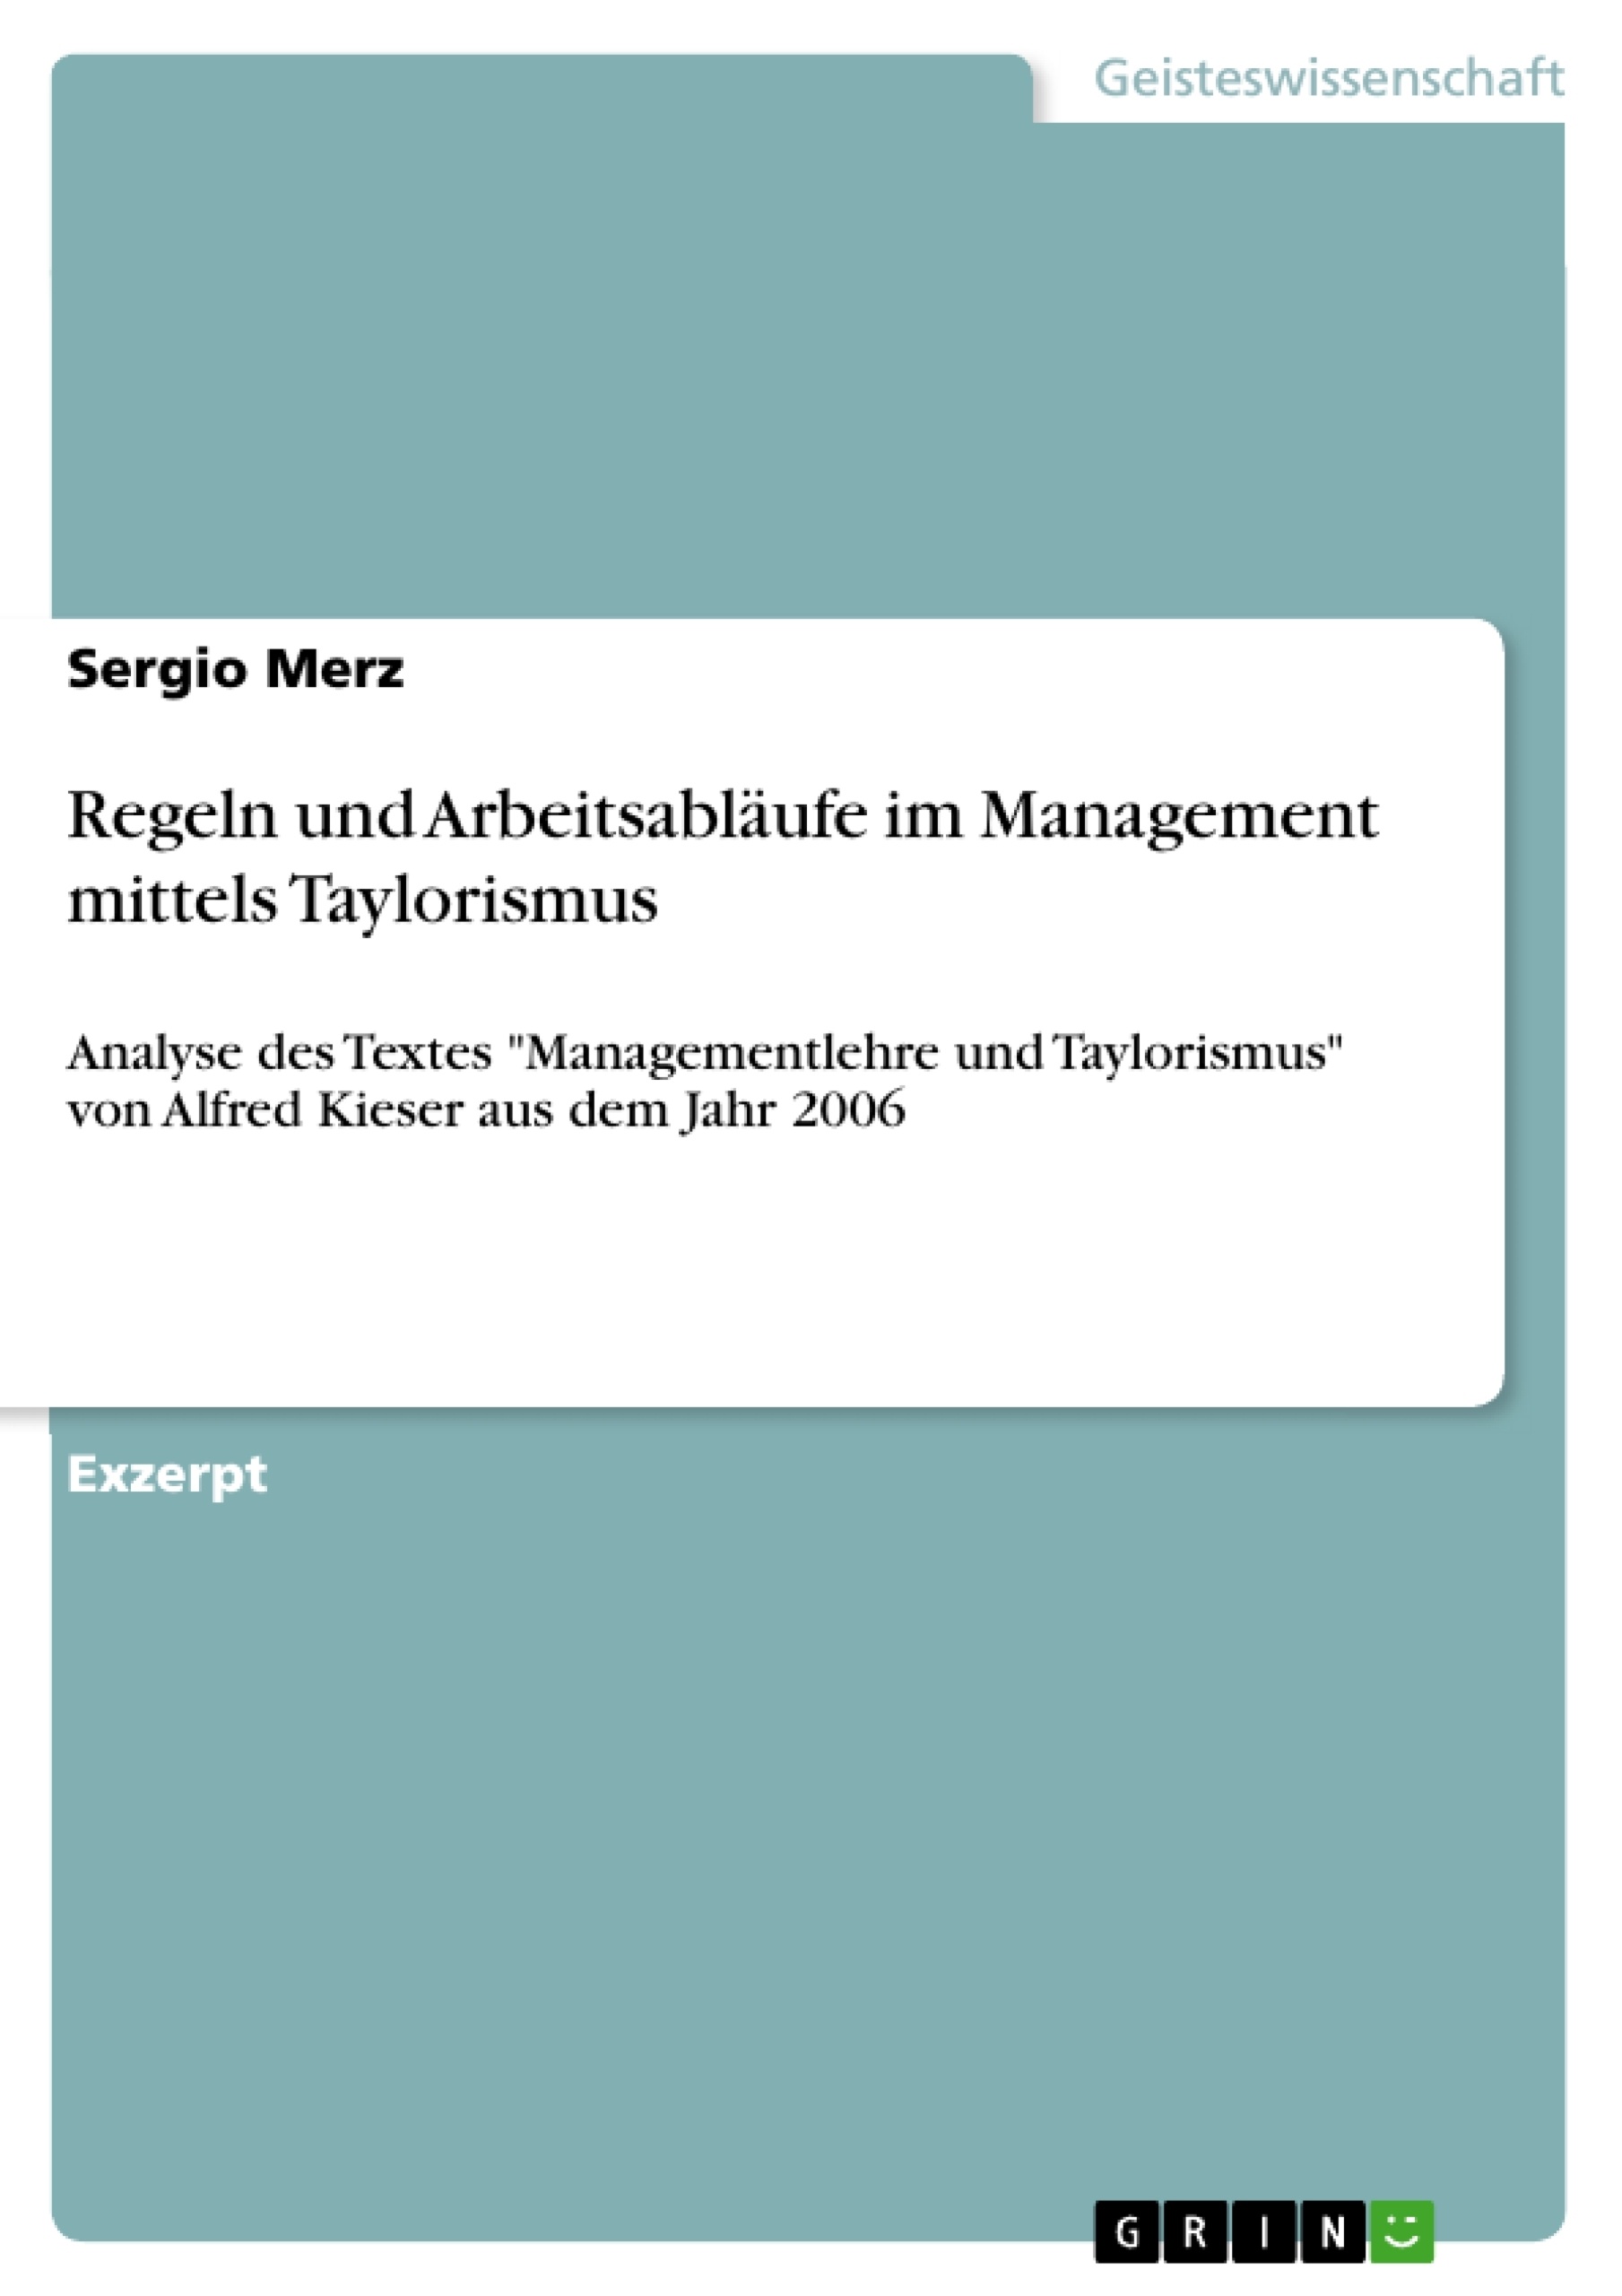 Title: Regeln und Arbeitsabläufe im Management mittels Taylorismus